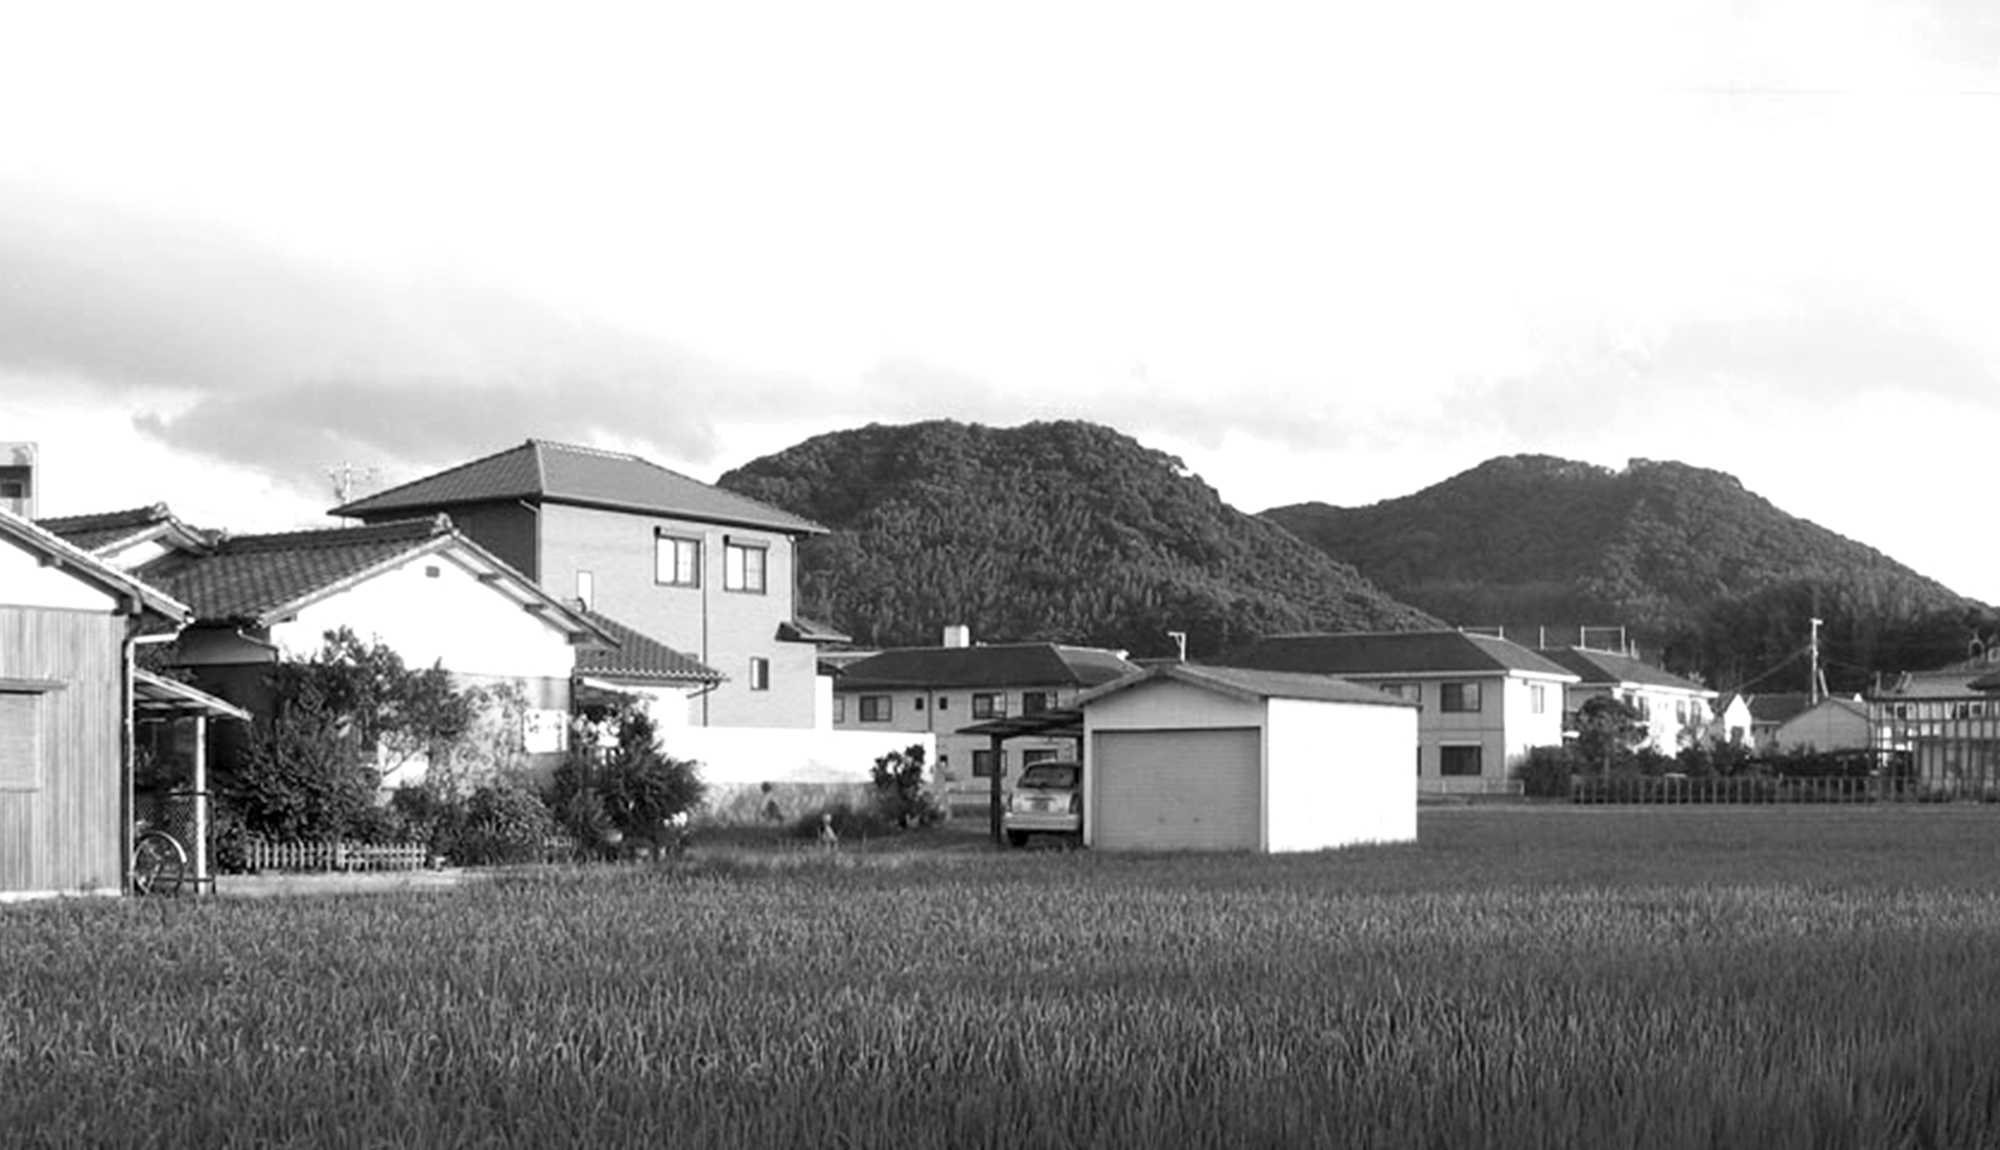 FAY ARCHITECTES - Semi-public : Maison, Agence d'architecture, Appartements locatifs, Atelier, Galerie, jardin, à Kyoto